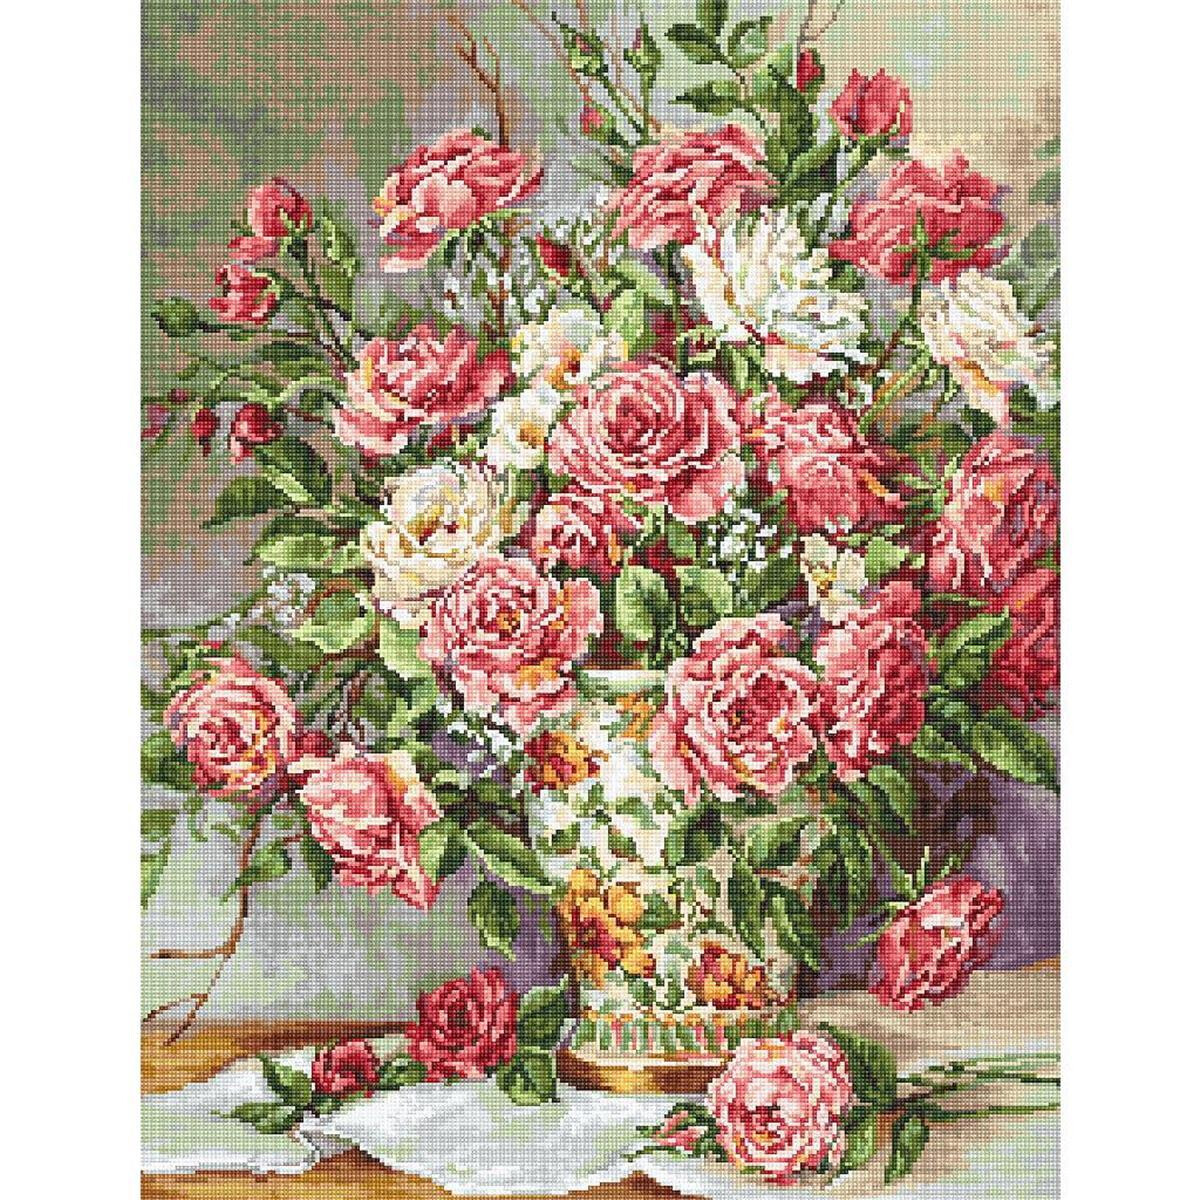 Un bouquet de roses roses et blanches dans un vase...